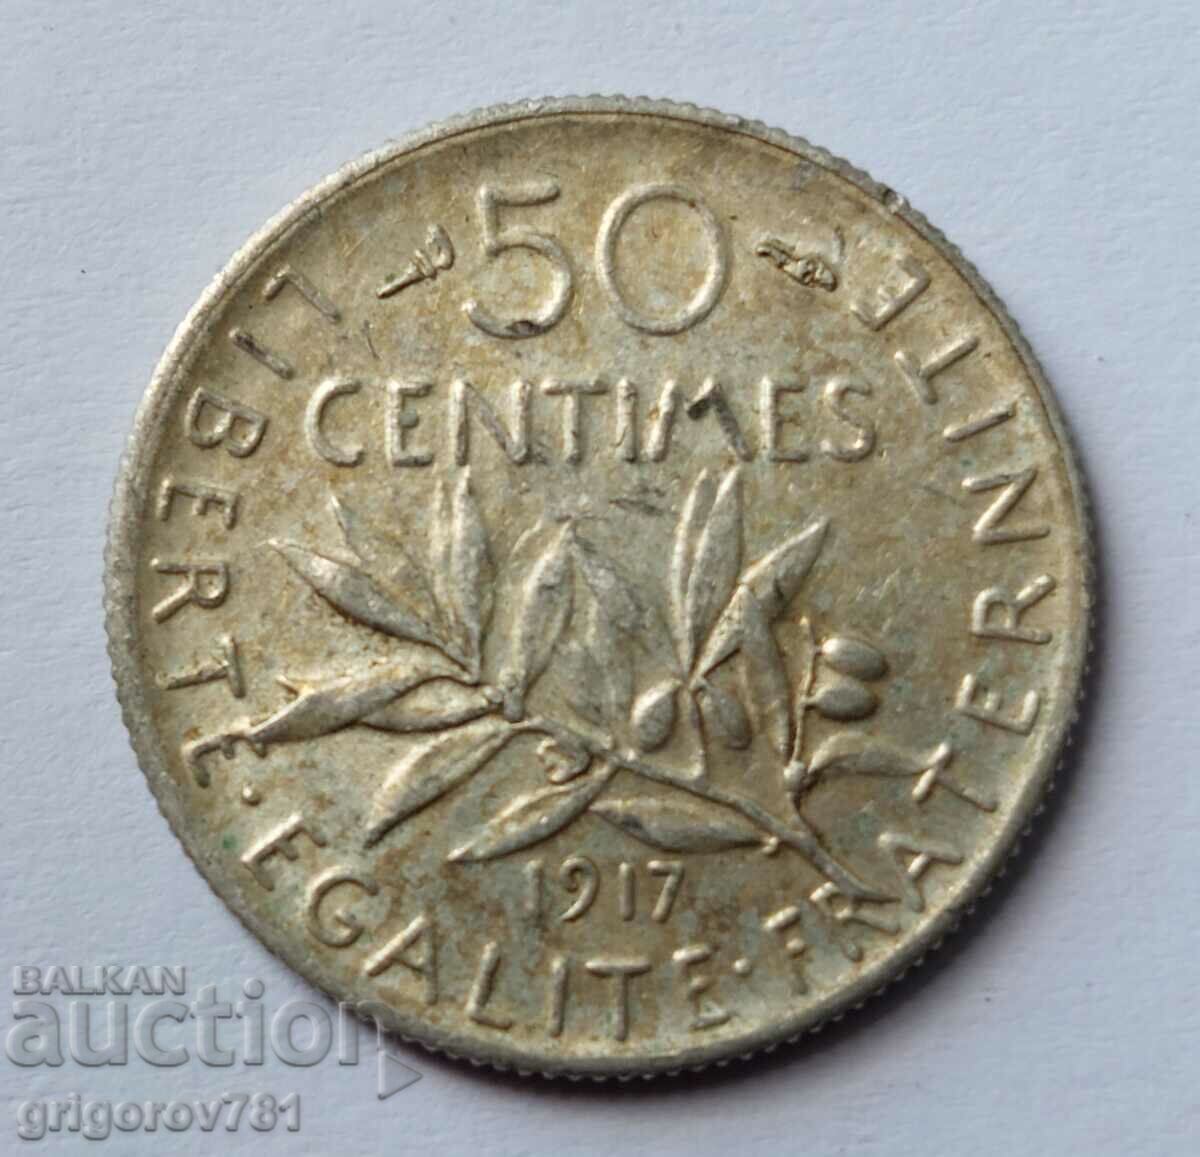 Ασημένιο 50 εκατοστά Γαλλία 1917 - ασημένιο νόμισμα №14